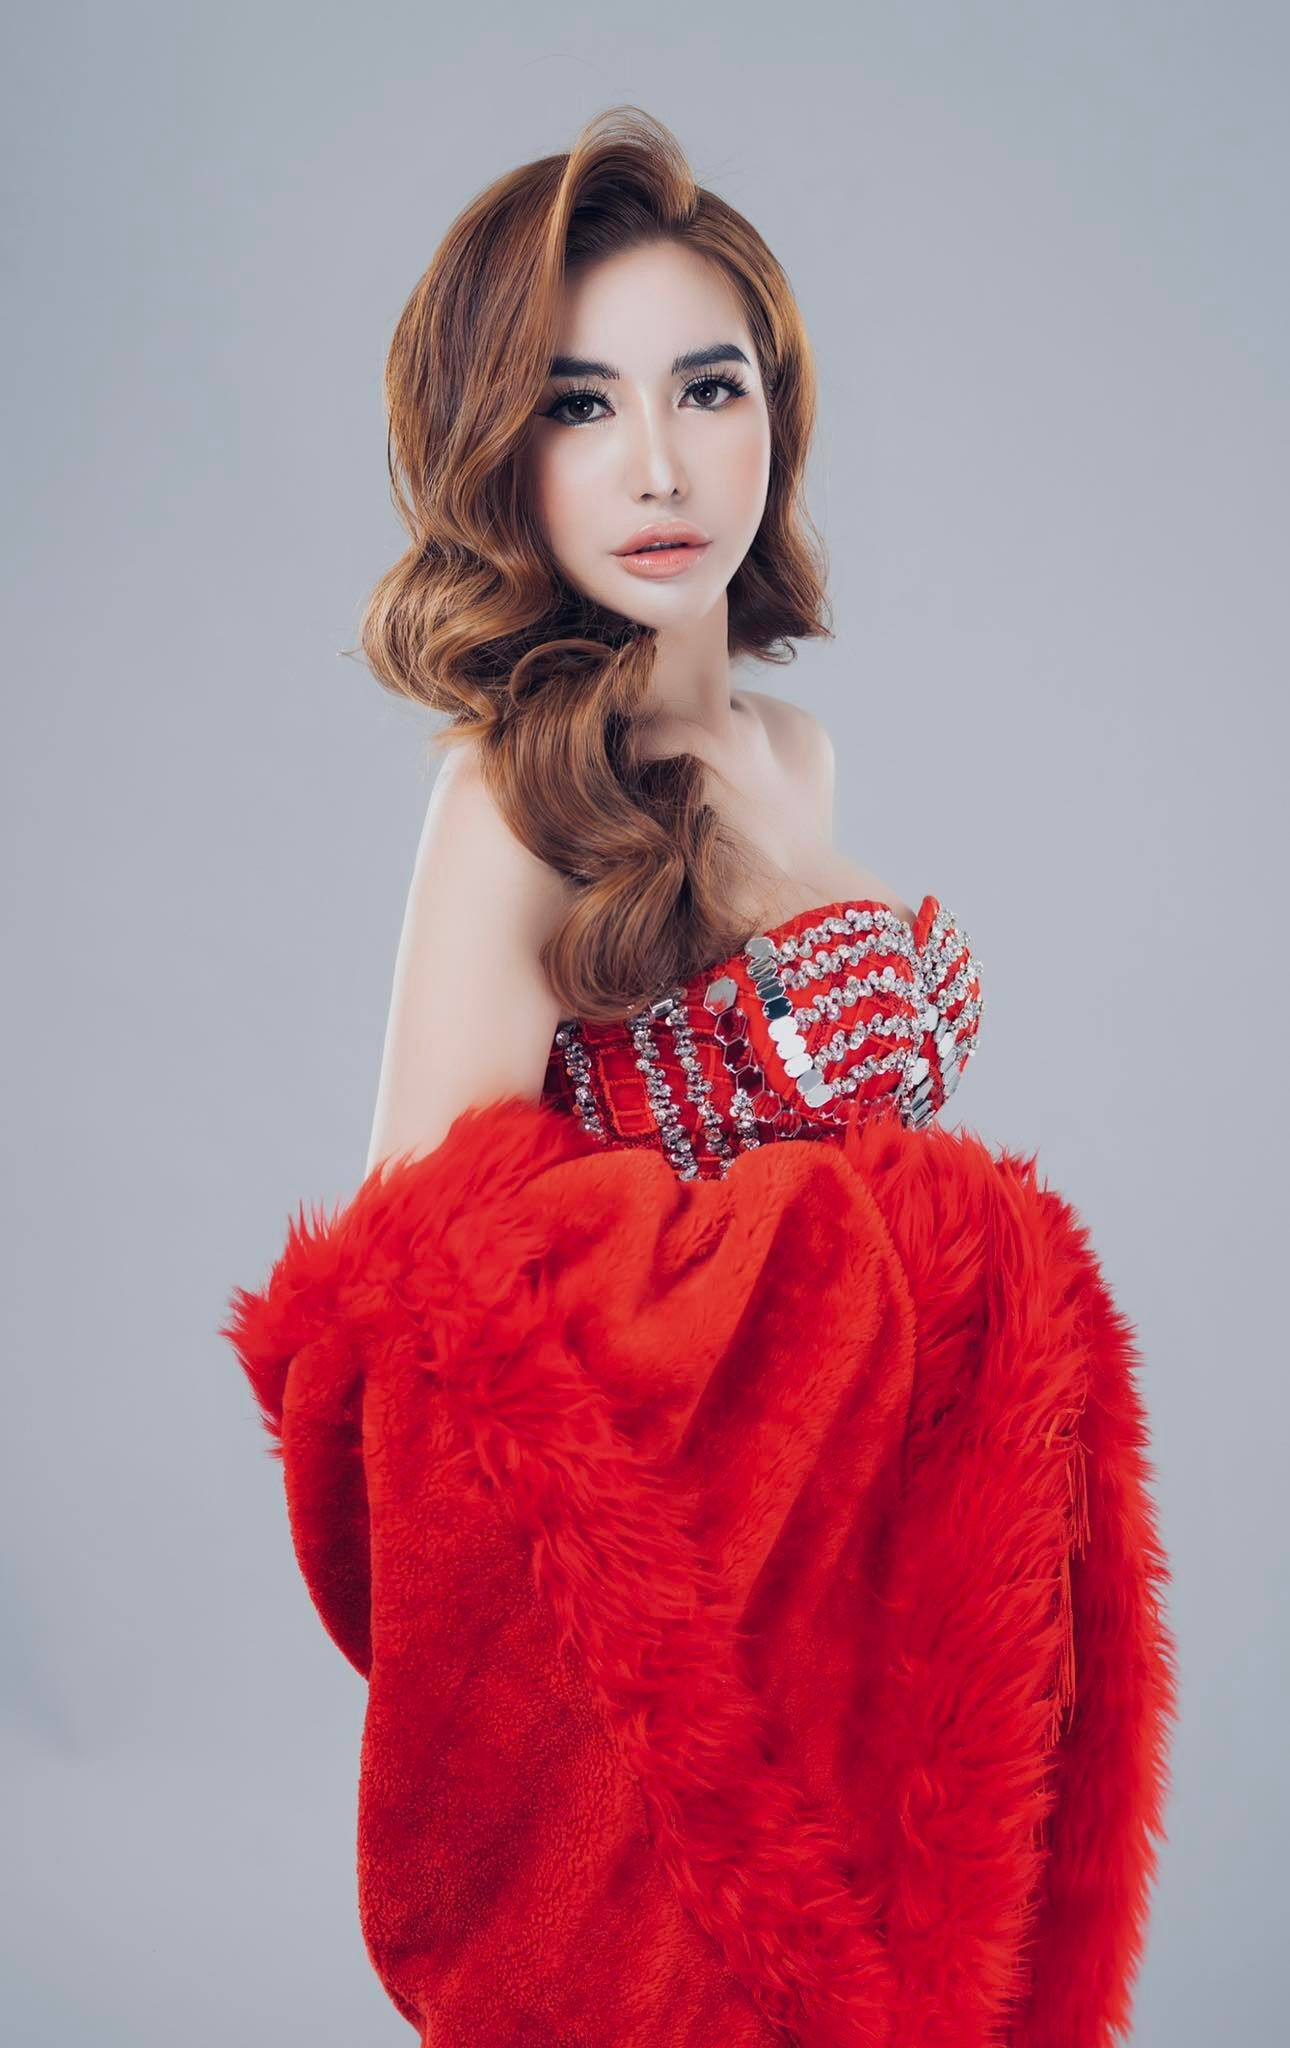 Hoa hậu phụ nữ Quốc tế Châu Hải My mặc kín nhưng vẫn gợi cảm - 5